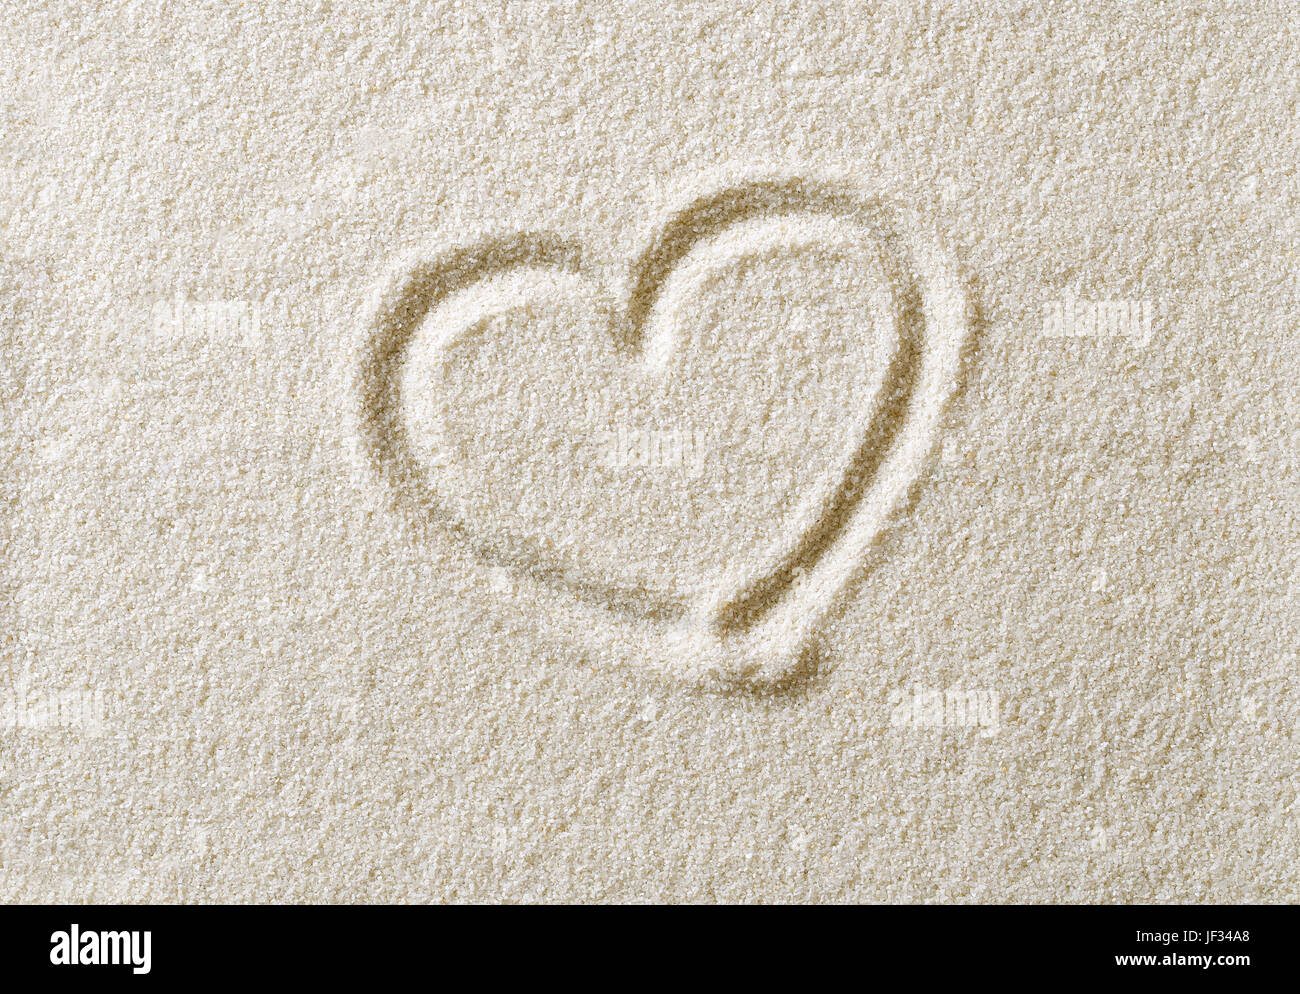 Herzsymbol Sandoberfläche angesaugt. Herzform, ein Schriftzeichen Emotion wie romantische Liebe zum Ausdruck bringen. Metaphorische. Makrofoto Nahaufnahme von oben. Stockfoto